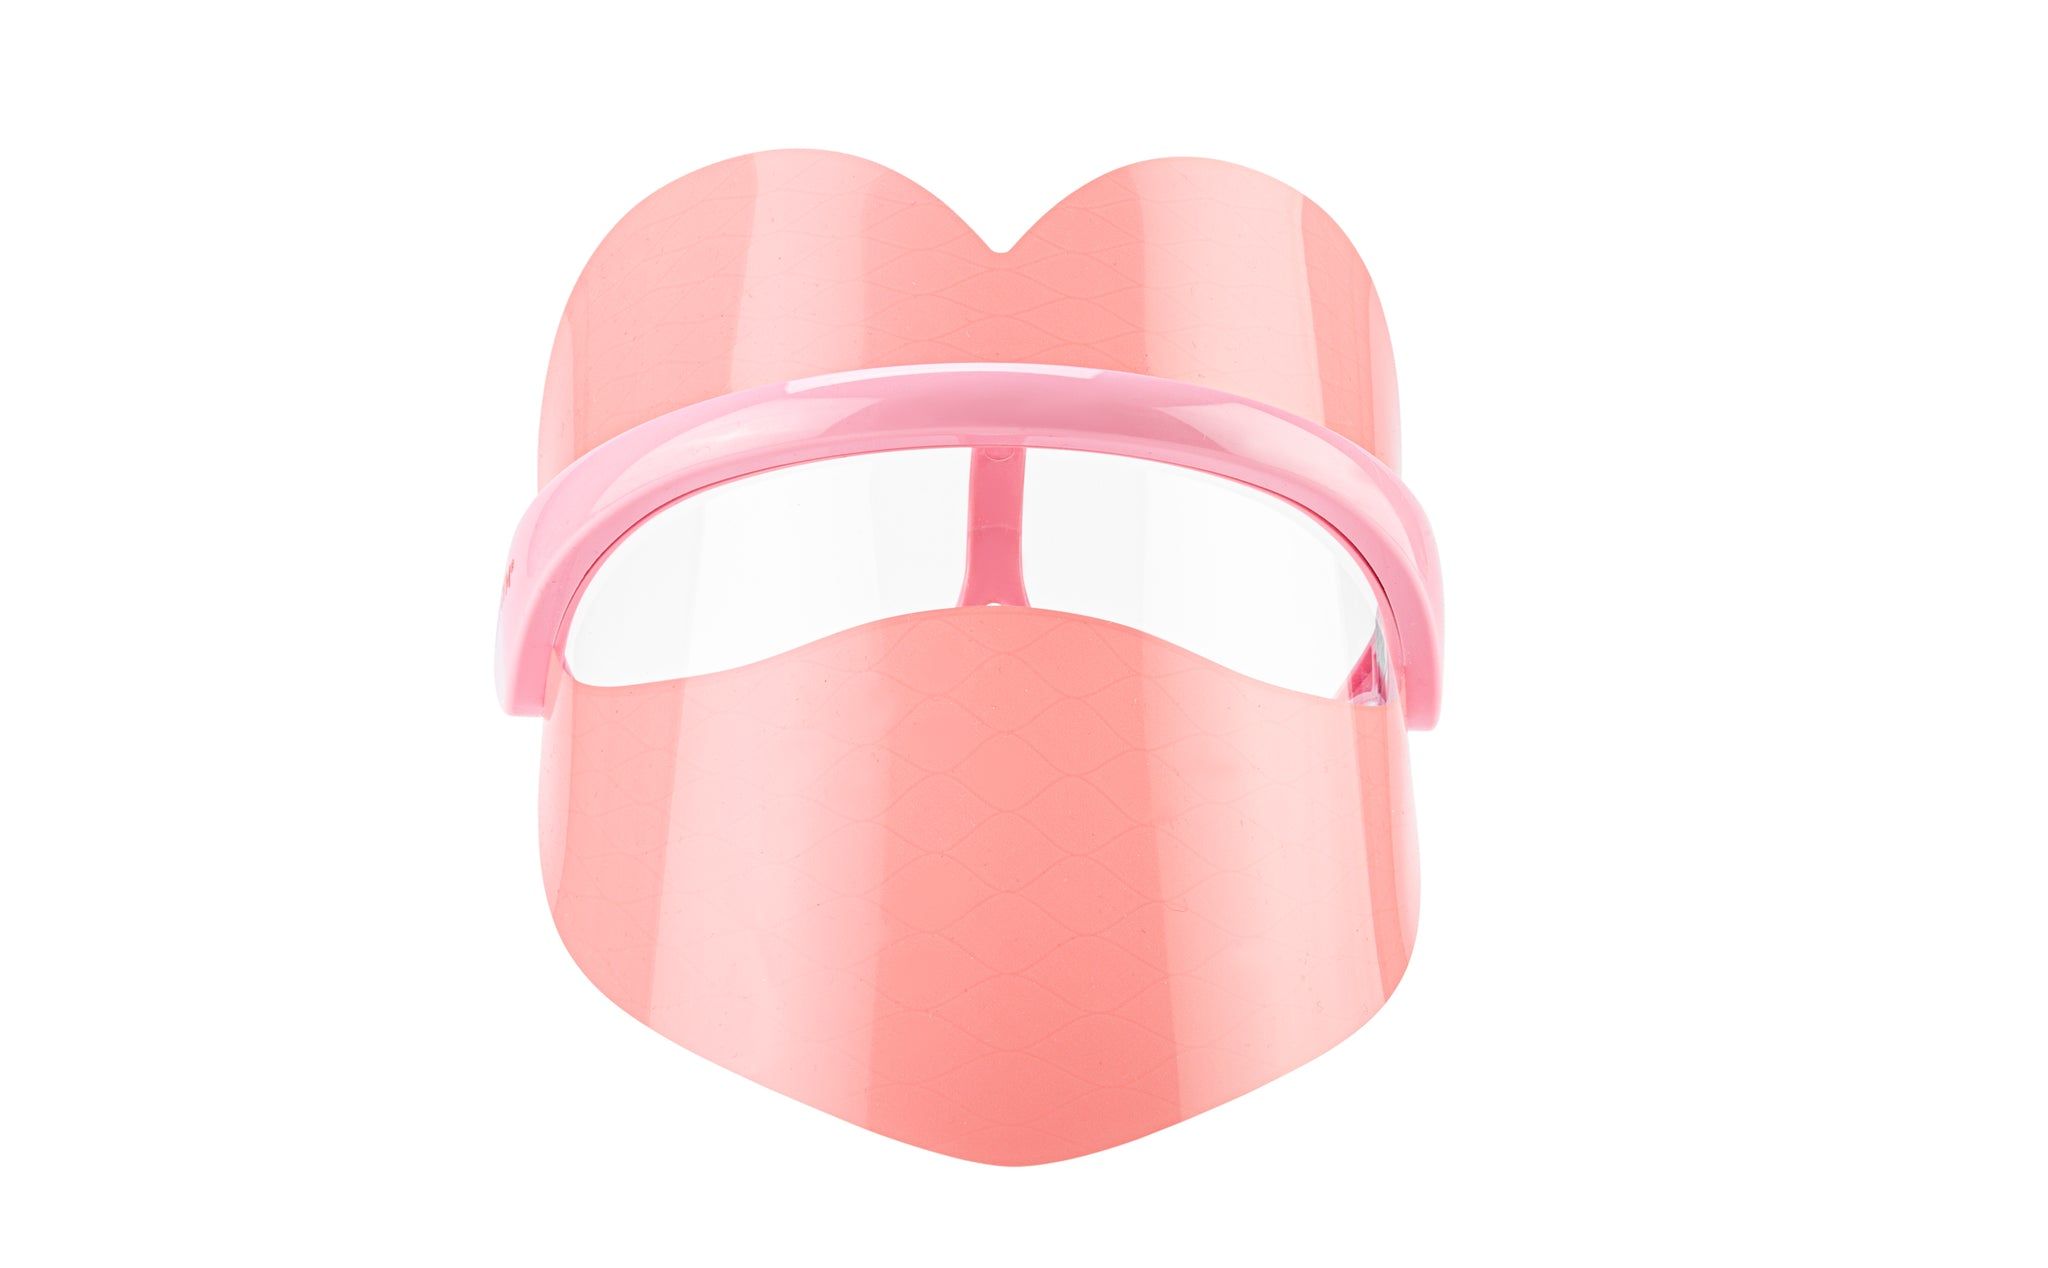 Wrinklit LED Mask